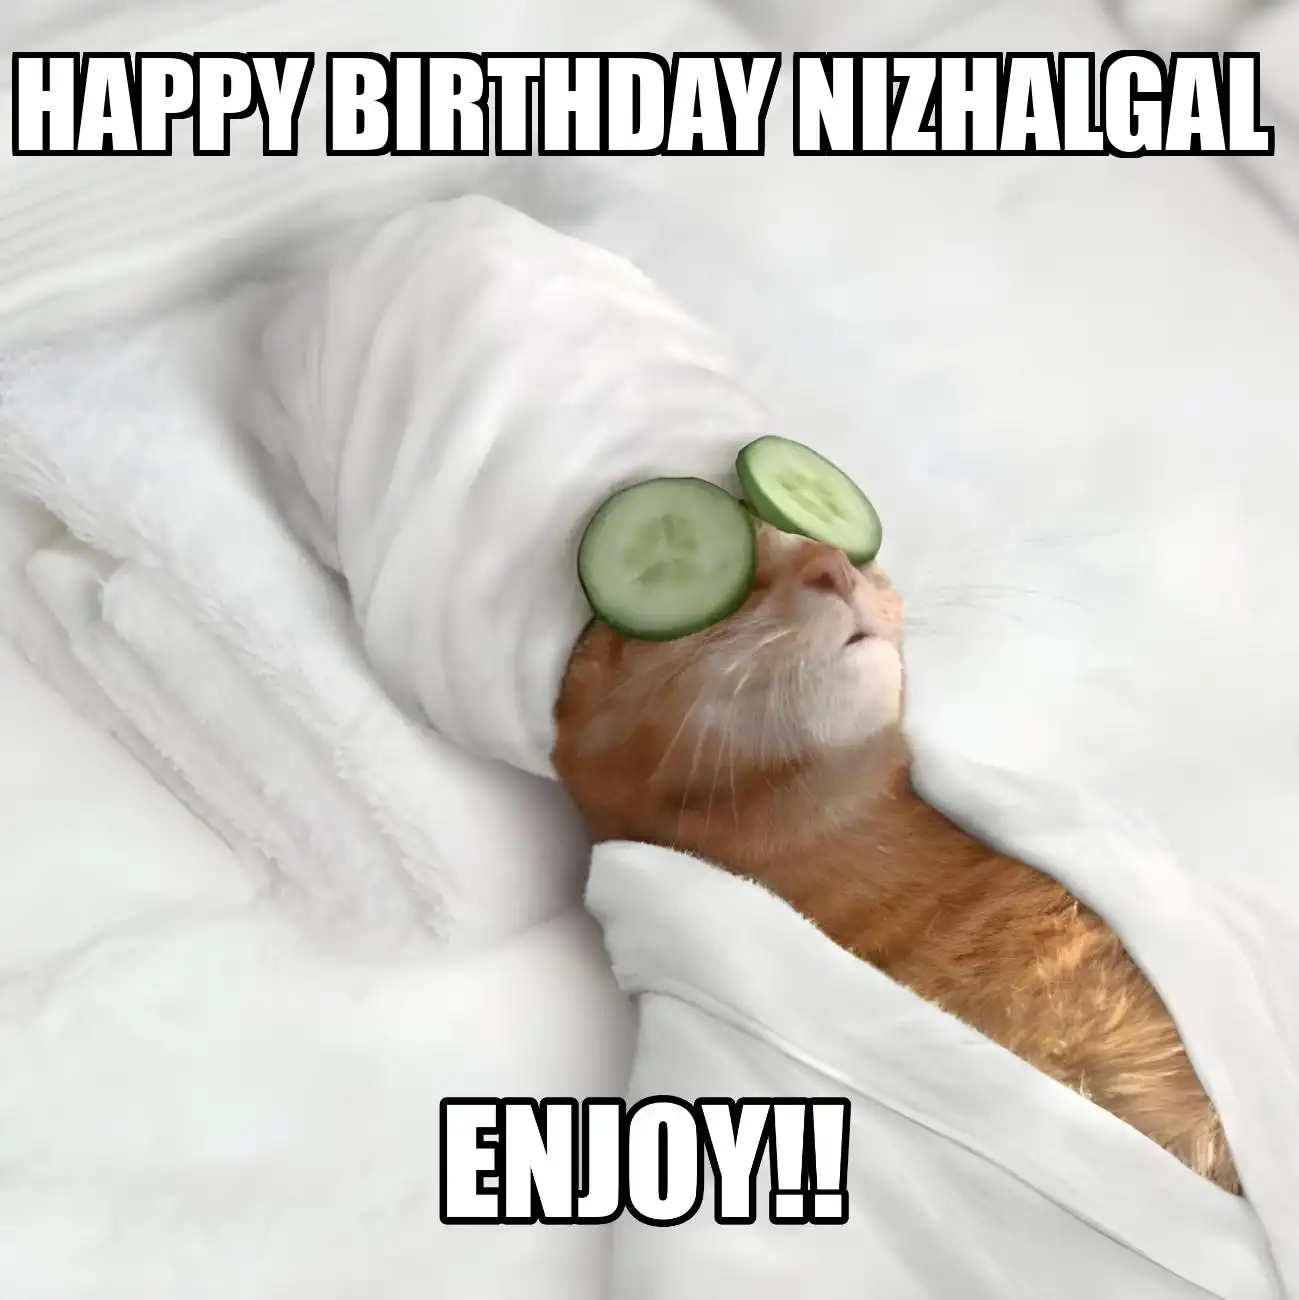 Happy Birthday Nizhalgal Enjoy Cat Meme